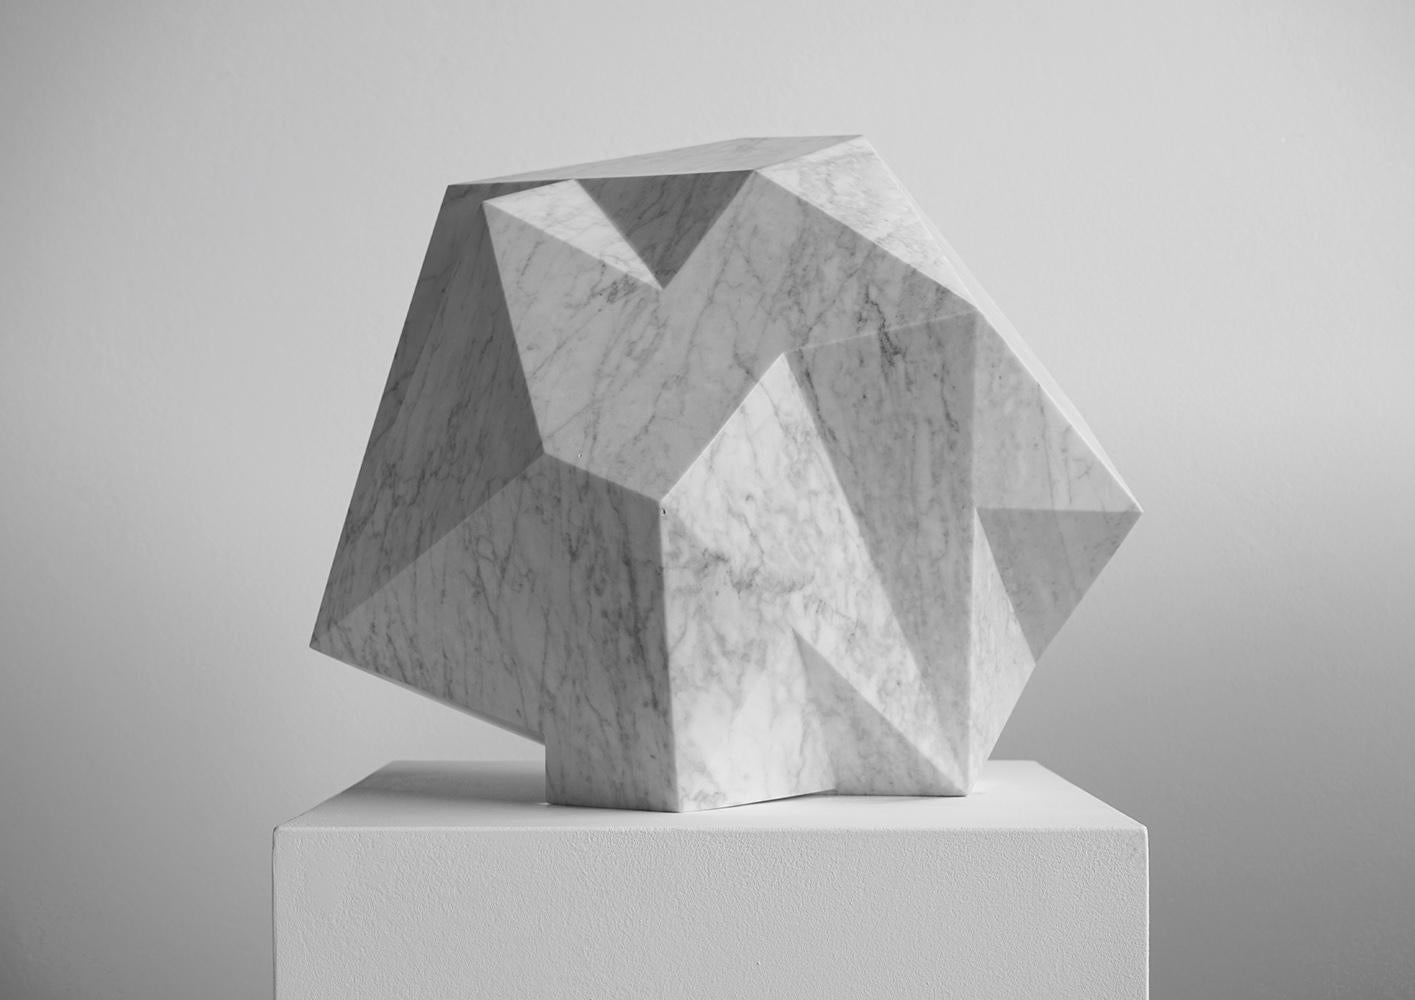 August Moon Waxing ist eine einzigartige Skulptur aus Carrara-Marmor des zeitgenössischen Künstlers Richard Perry mit den Maßen 35 × 35 × 35 cm (13,8 × 13,8 × 13,8 in). 
Die Skulptur ist signiert und wird mit einem Echtheitszertifikat